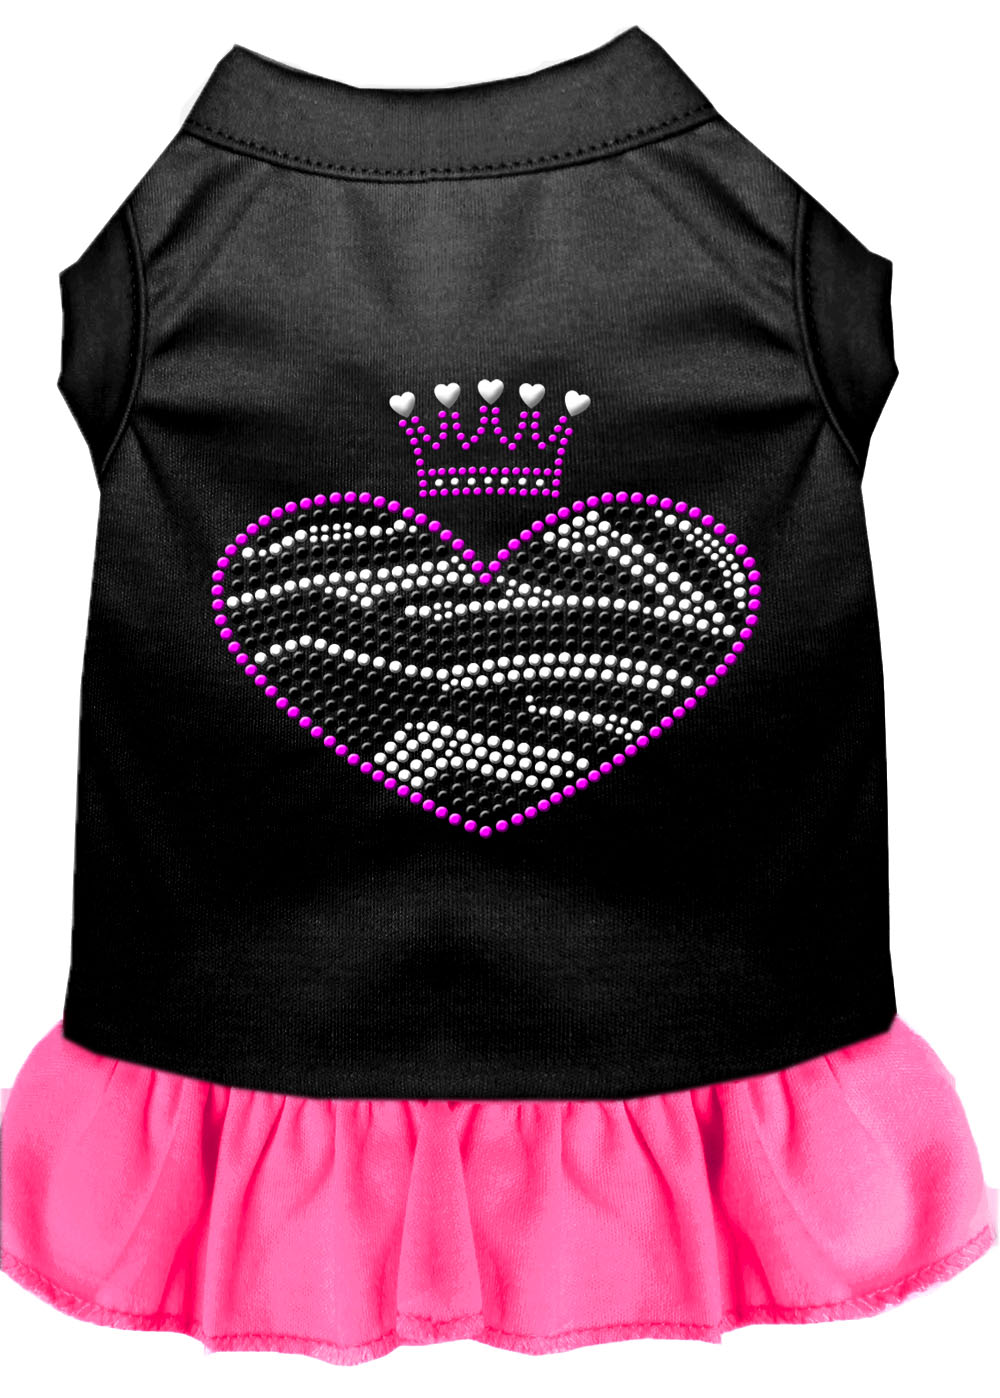 Zebra Heart Rhinestone Dress Black With Bright Pink Xxl GreatEagleInc